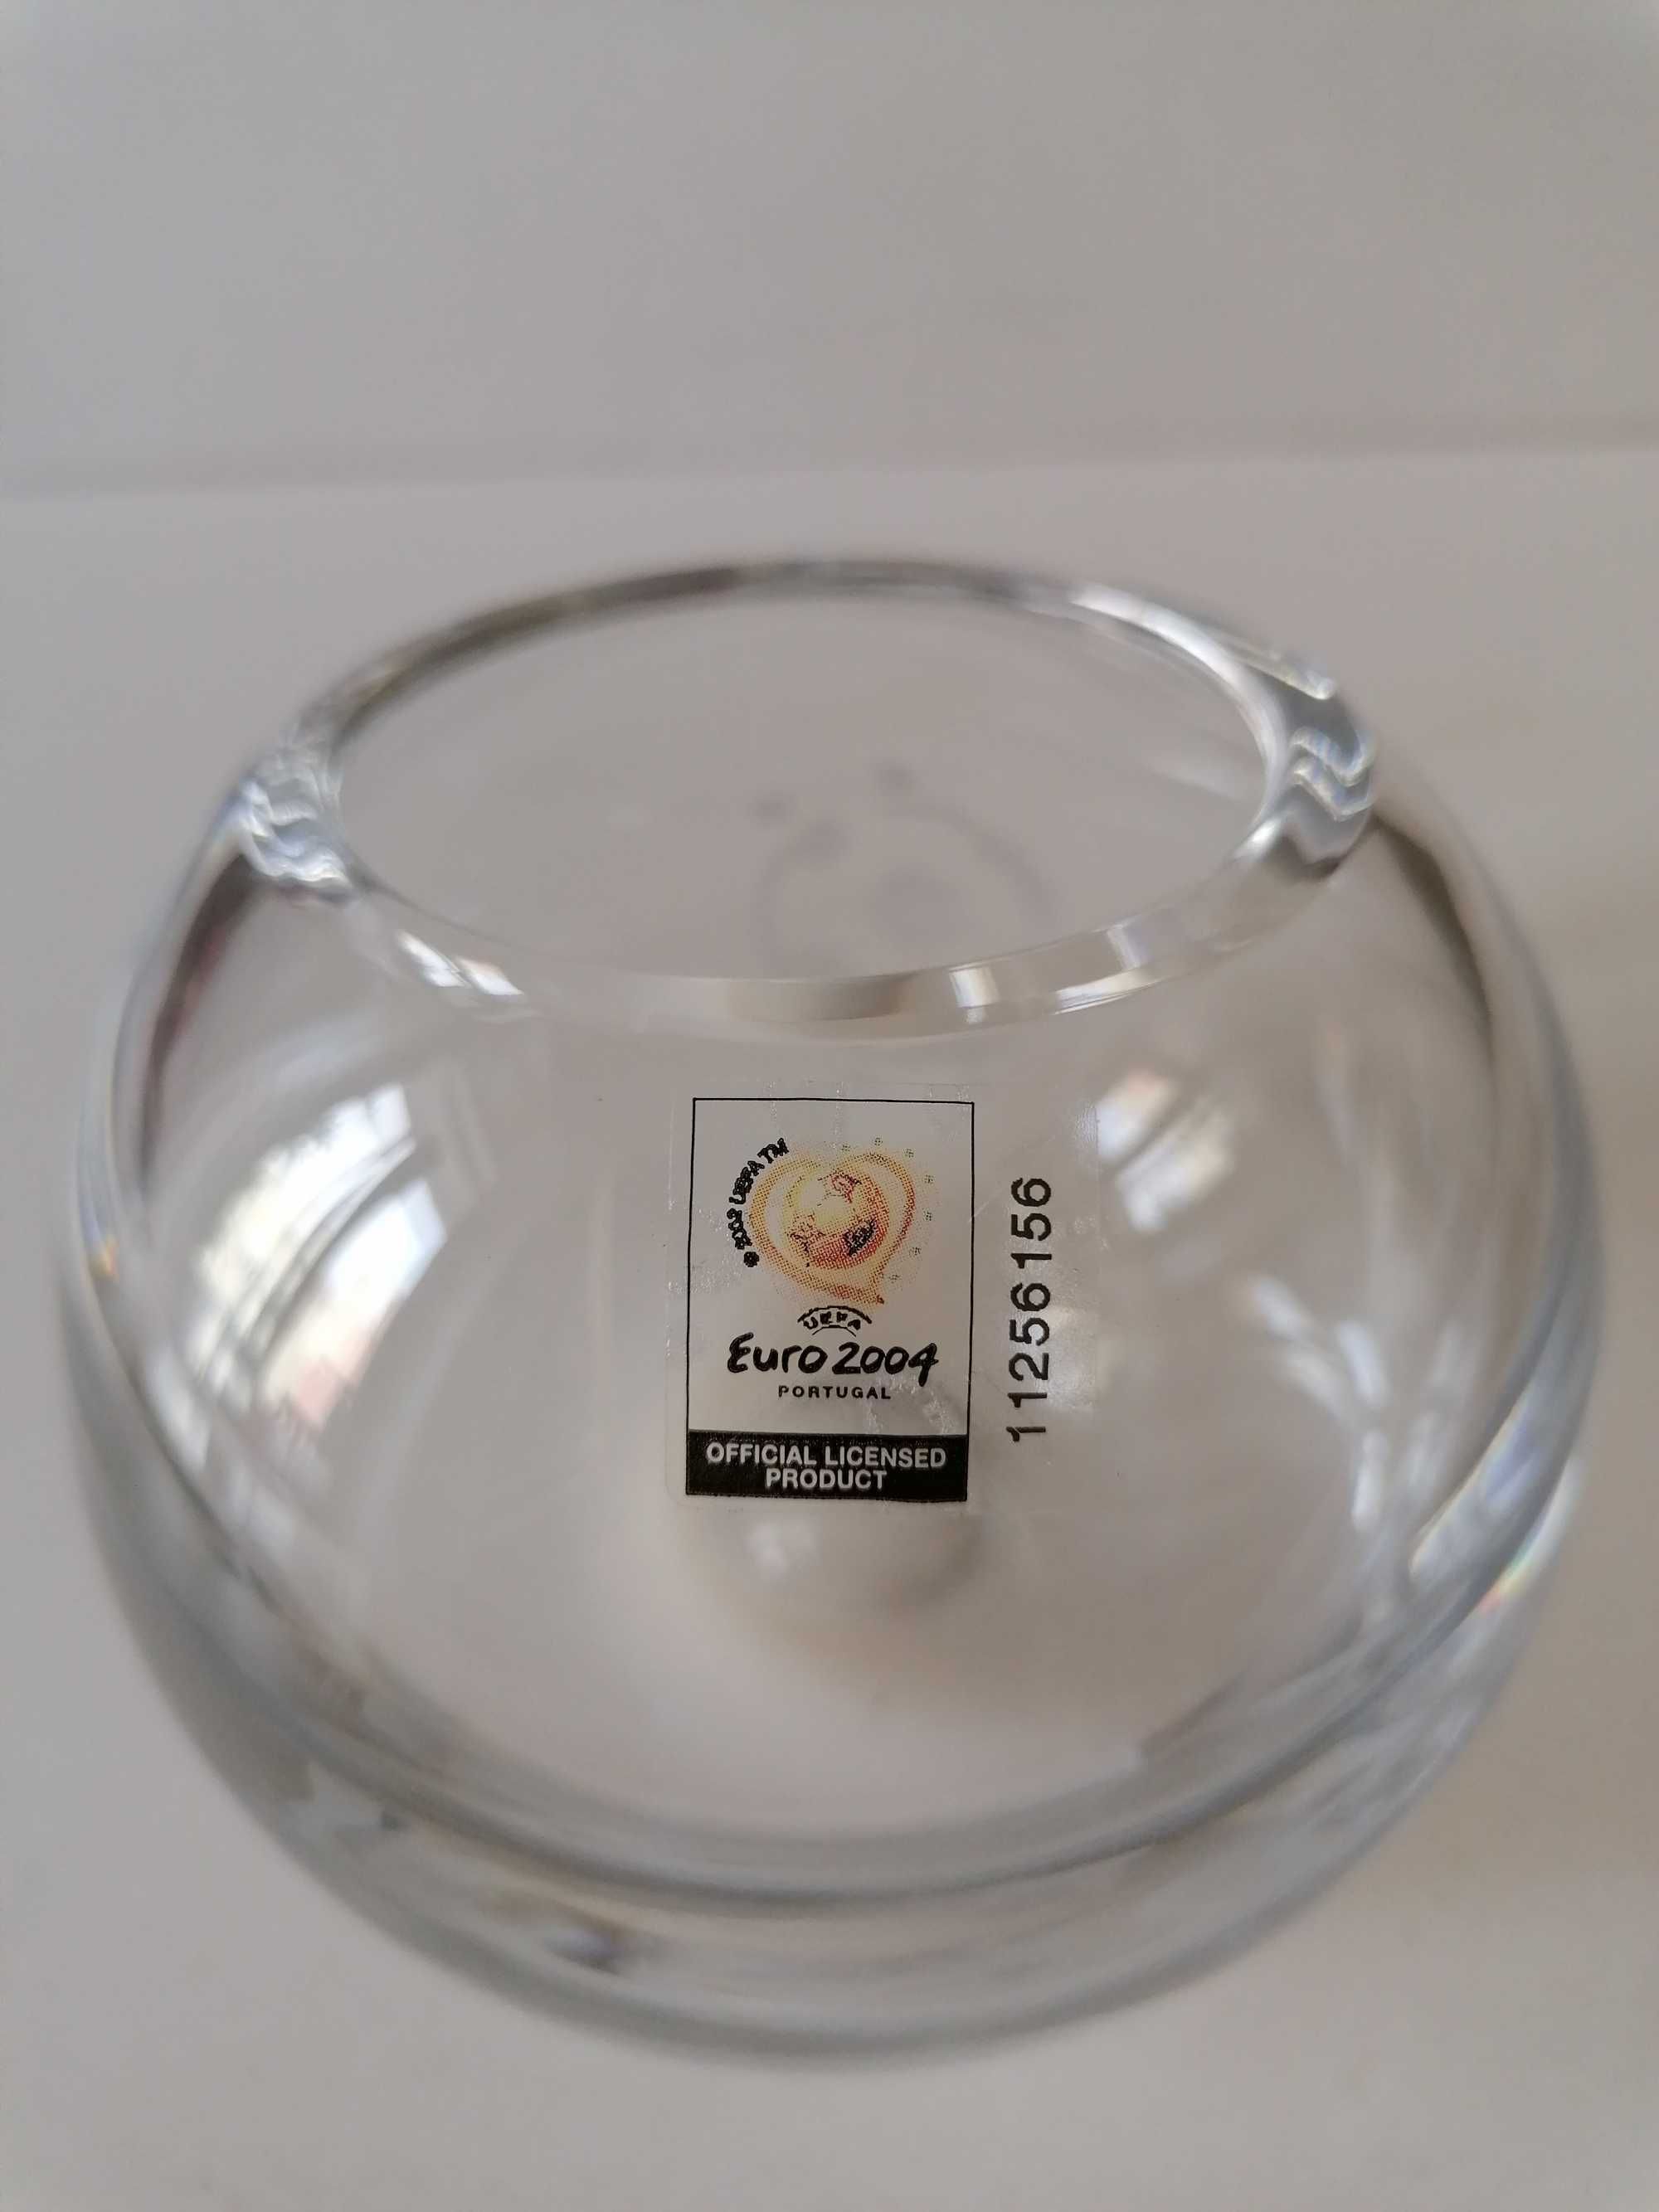 Bola de cristal Atlantis - Euro 2004 - nova & com selos